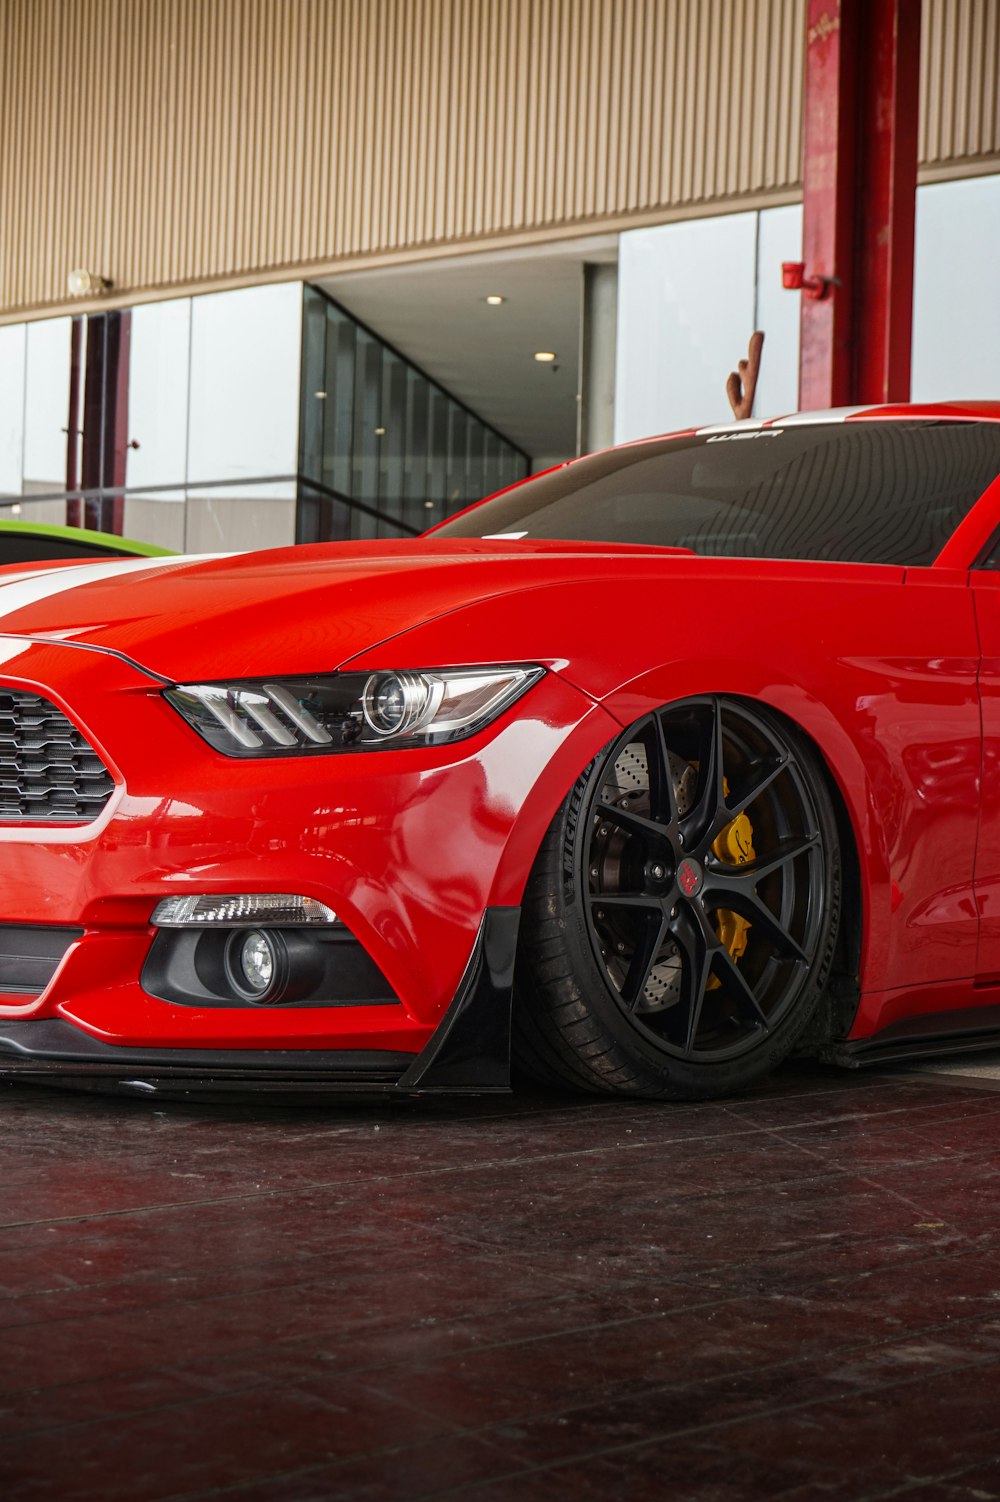 Une Mustang rouge garée devant un immeuble